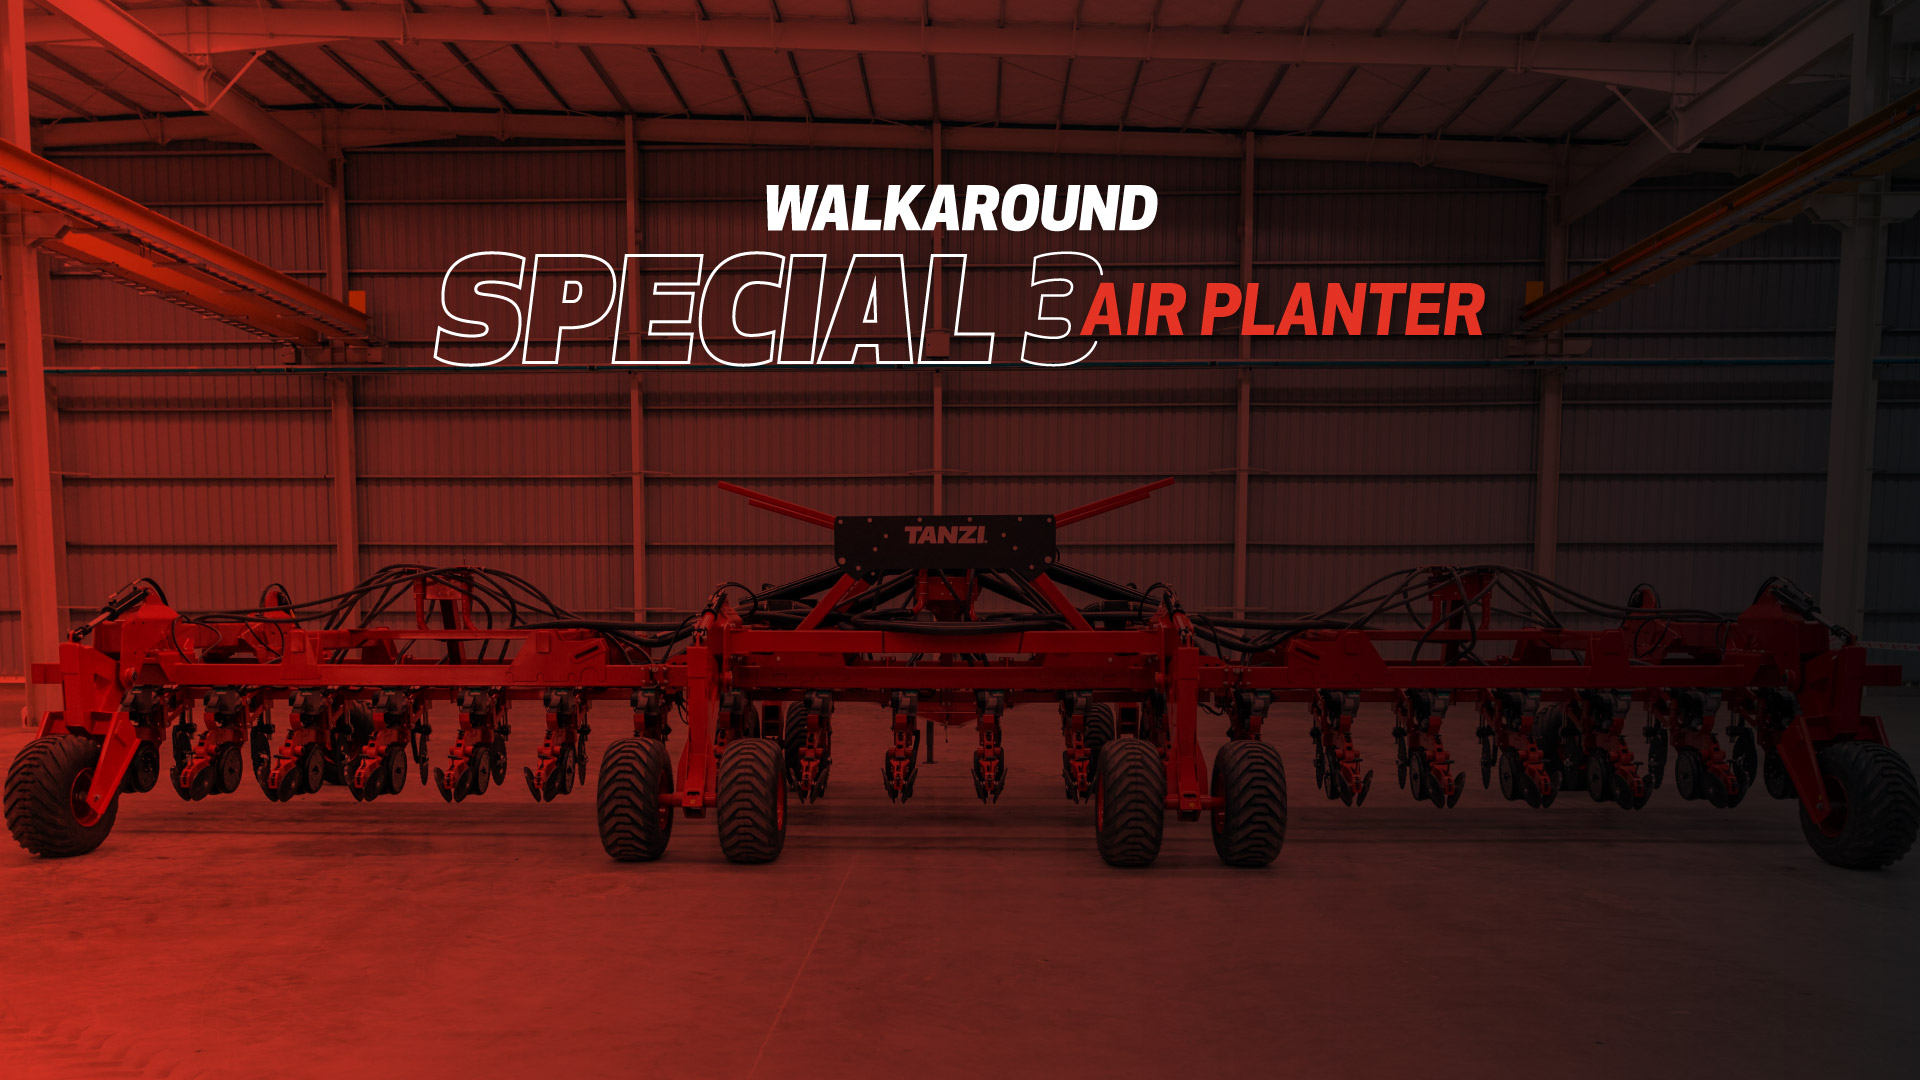 Walkaround Special 3 Air Planter